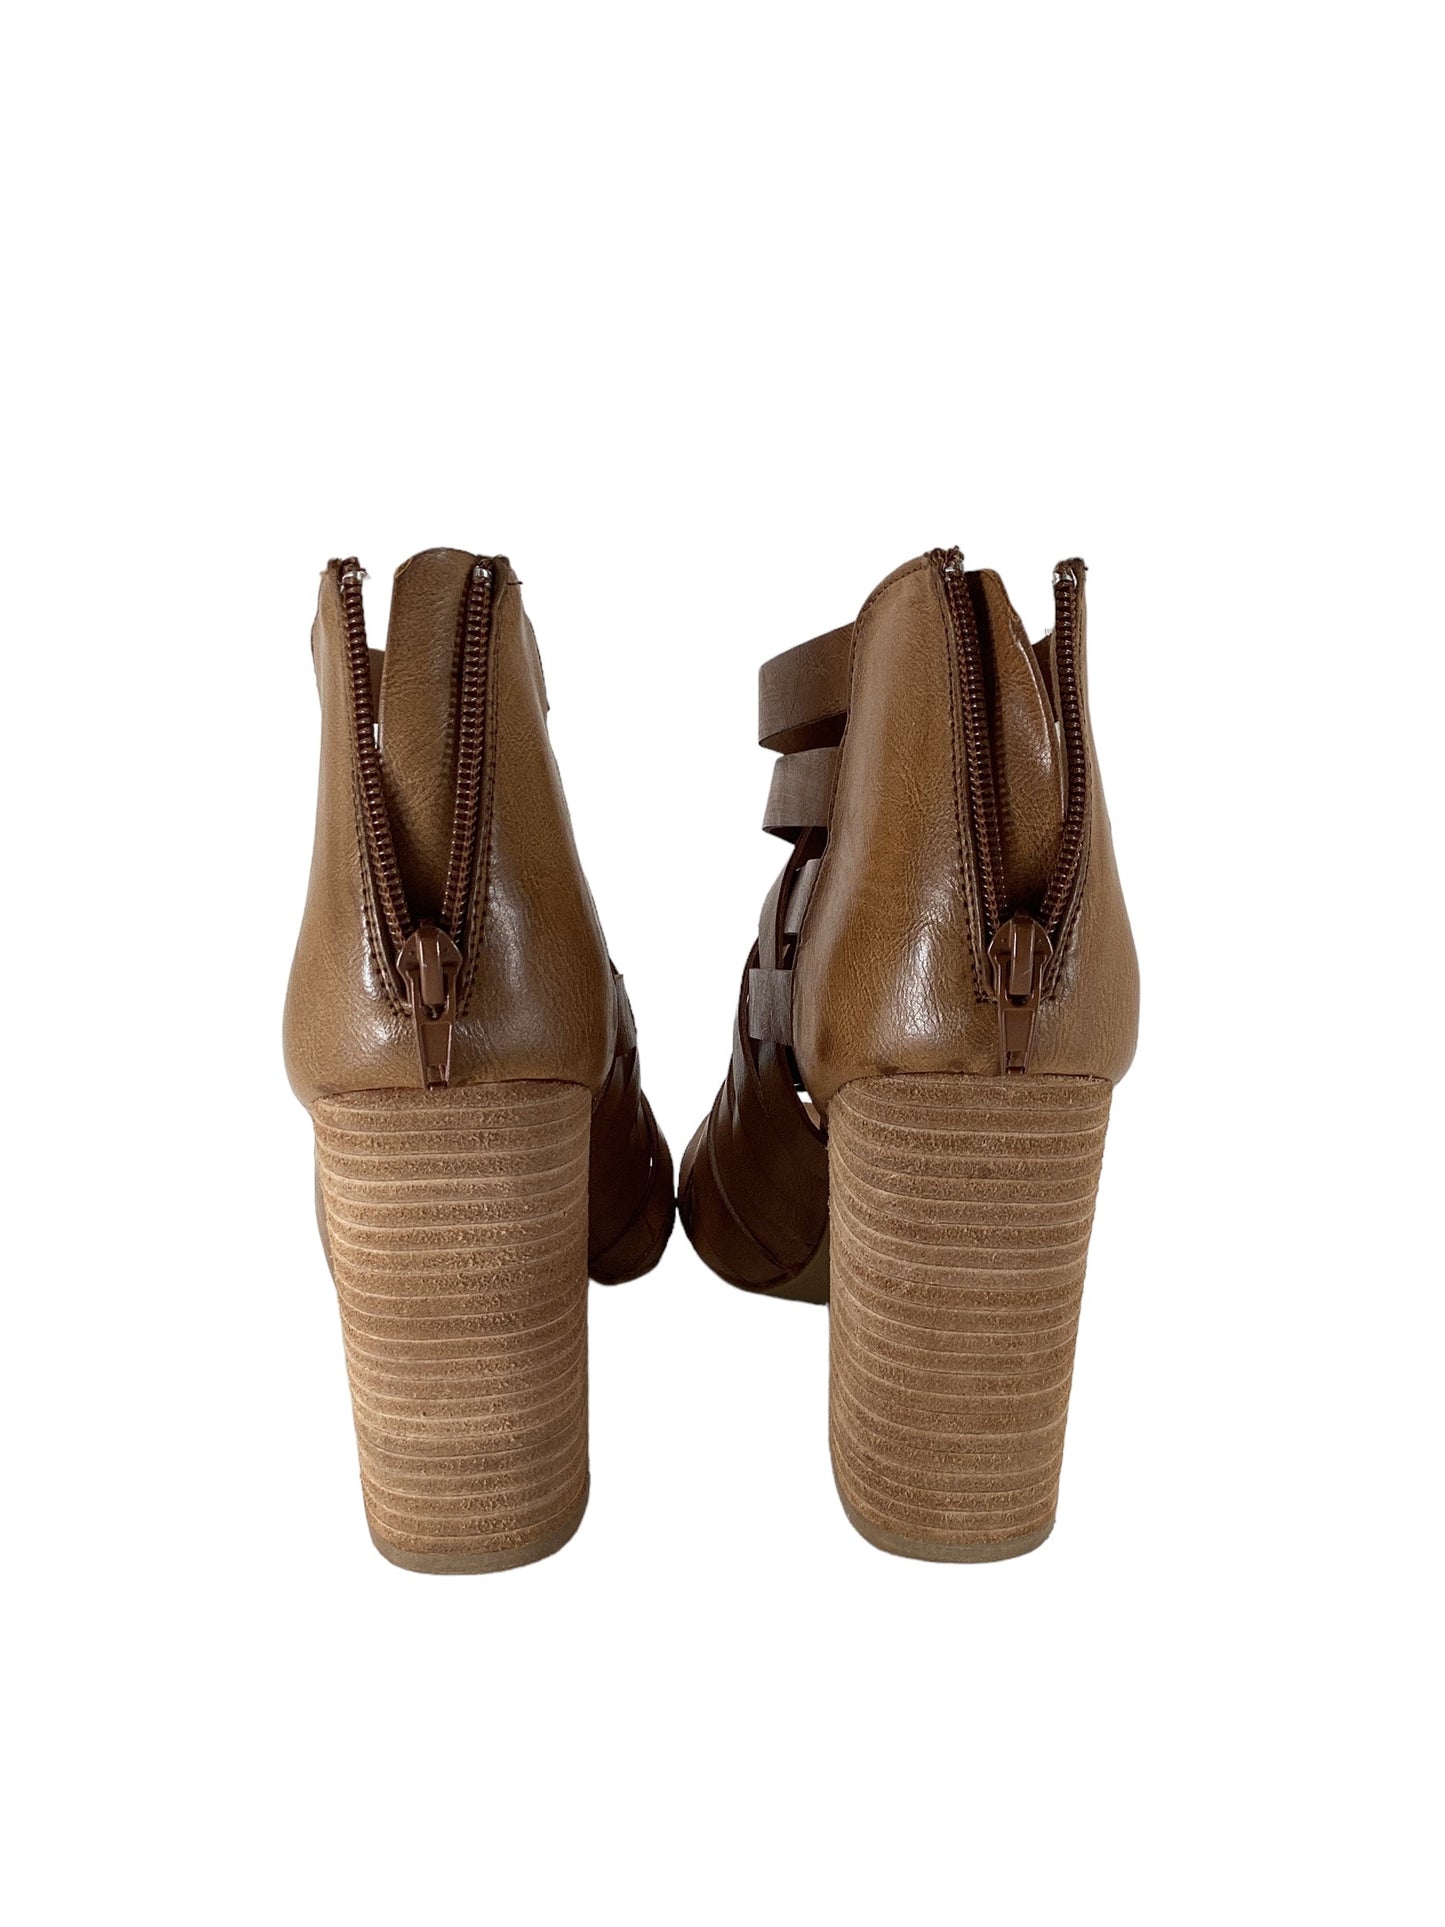 Tan Sandals Heels Block Cme, Size 9